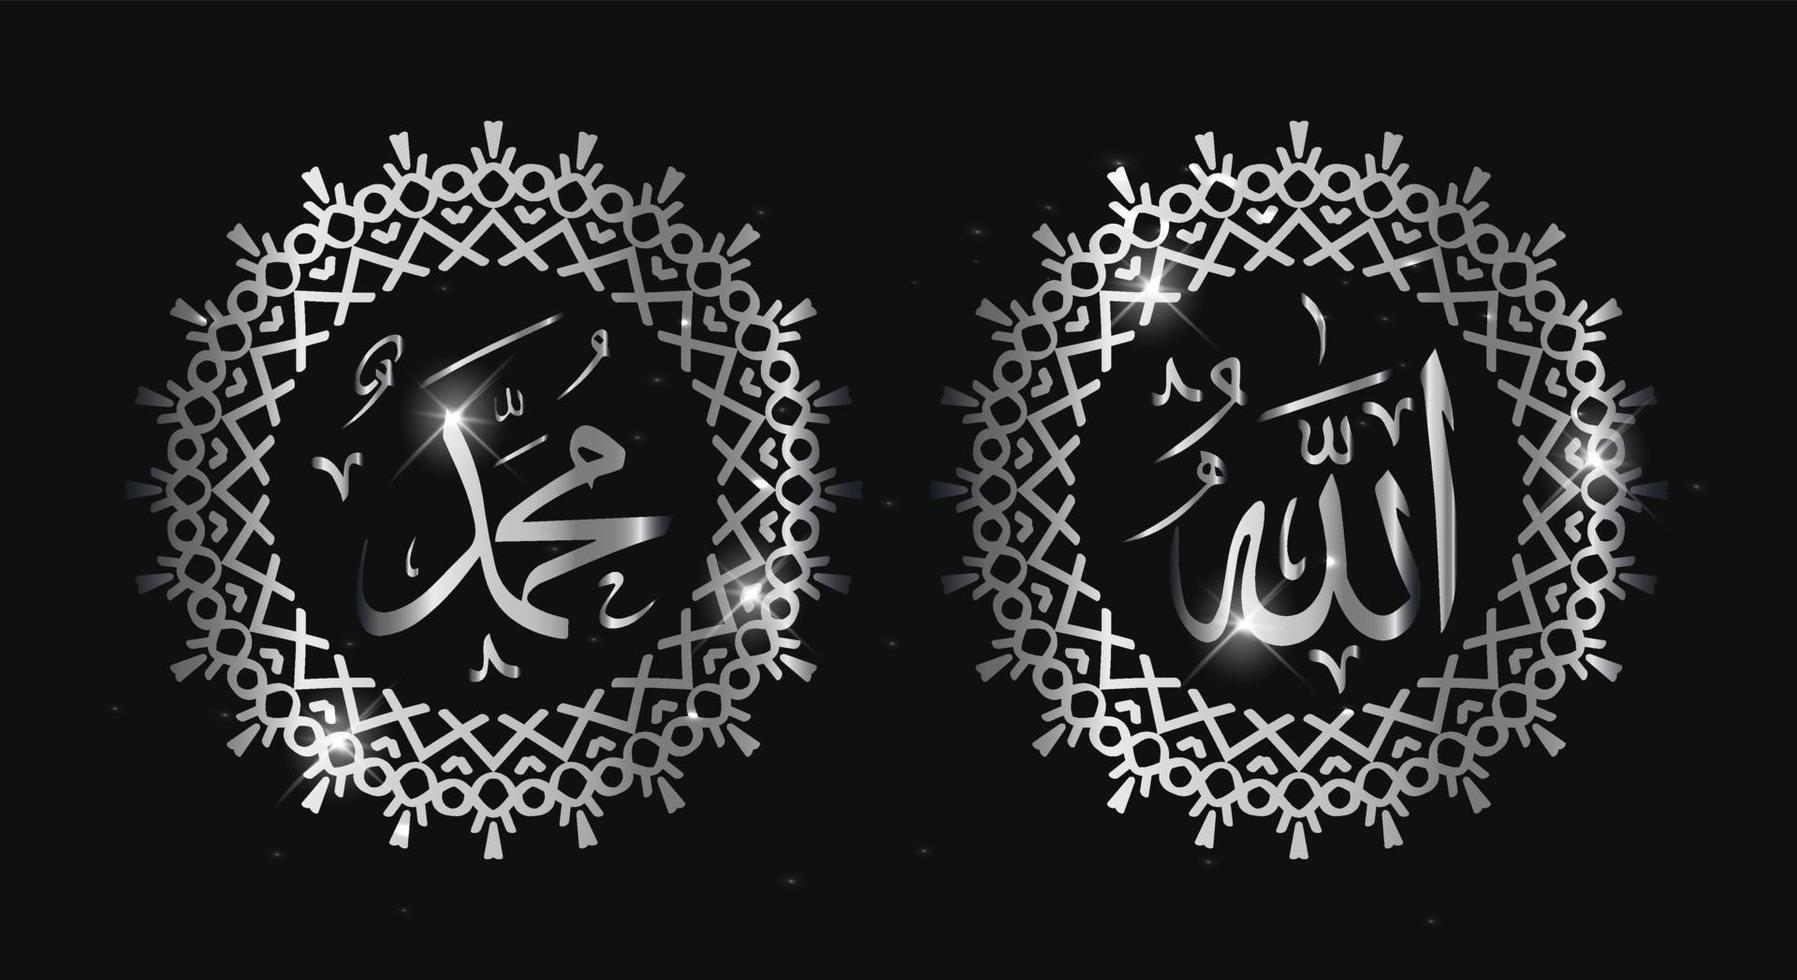 calligraphie arabe allah muhammad avec cadre vintage et couleur argent vecteur